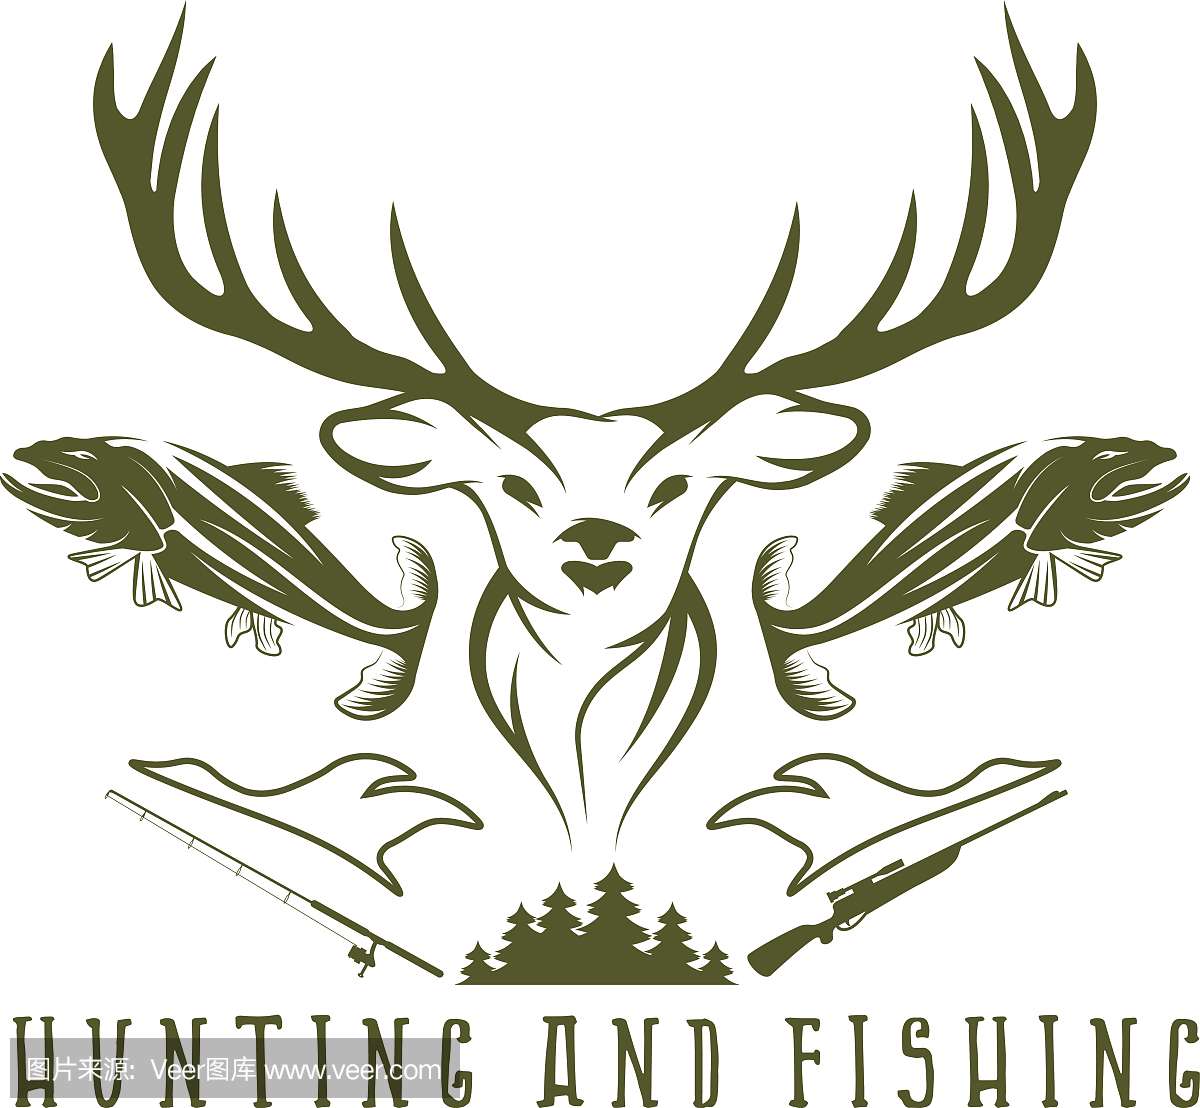 狩猎和钓鱼复古徽标矢量设计模板